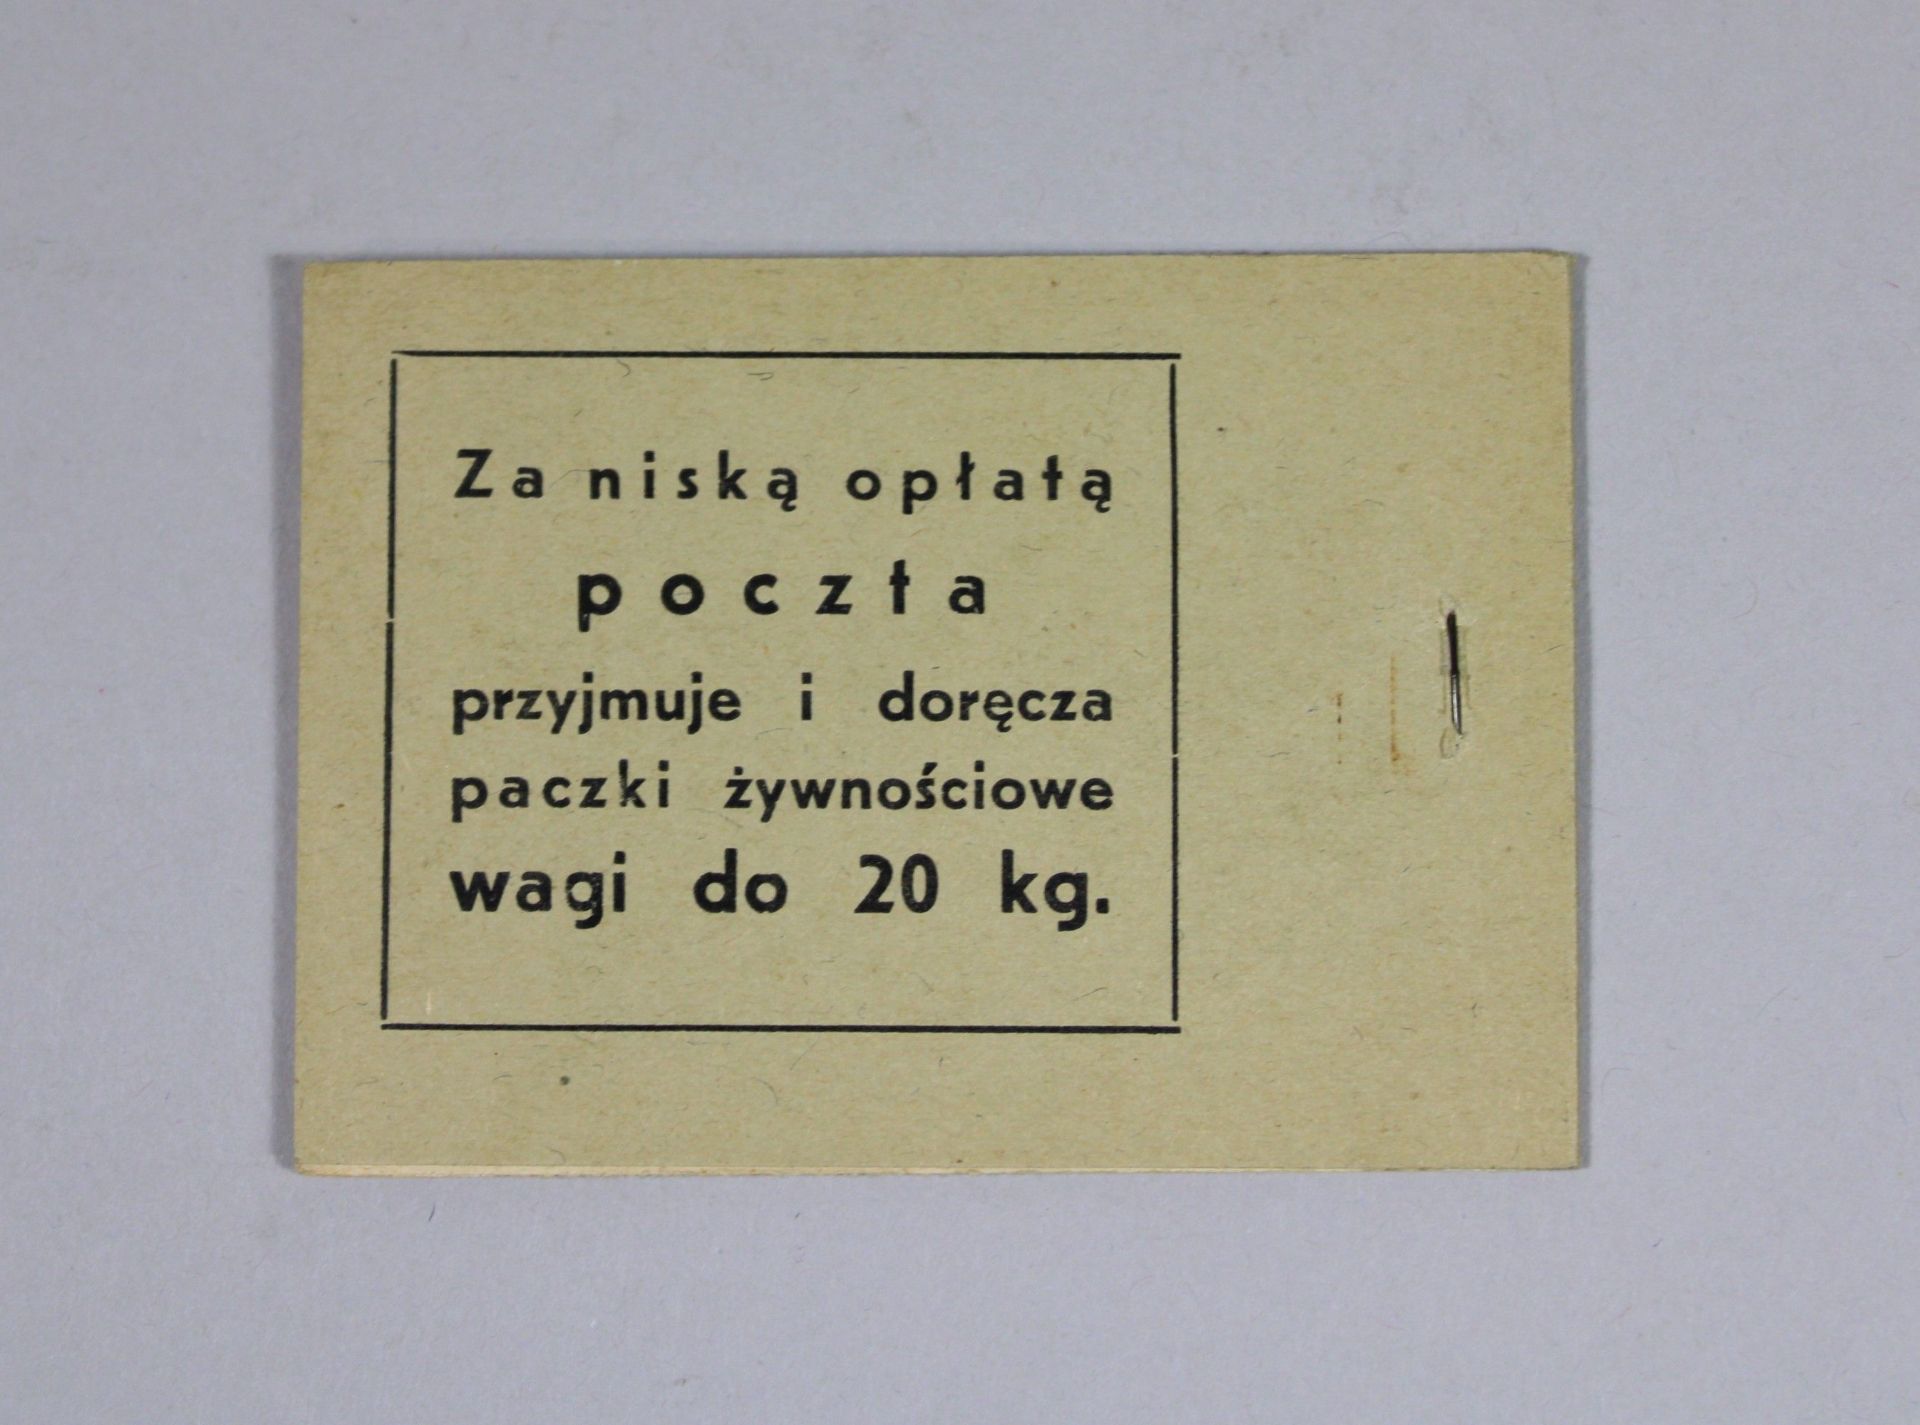 16 Briefmarkenhefte, Polen, 1938, vollständig, guter Zustand. - Image 2 of 3